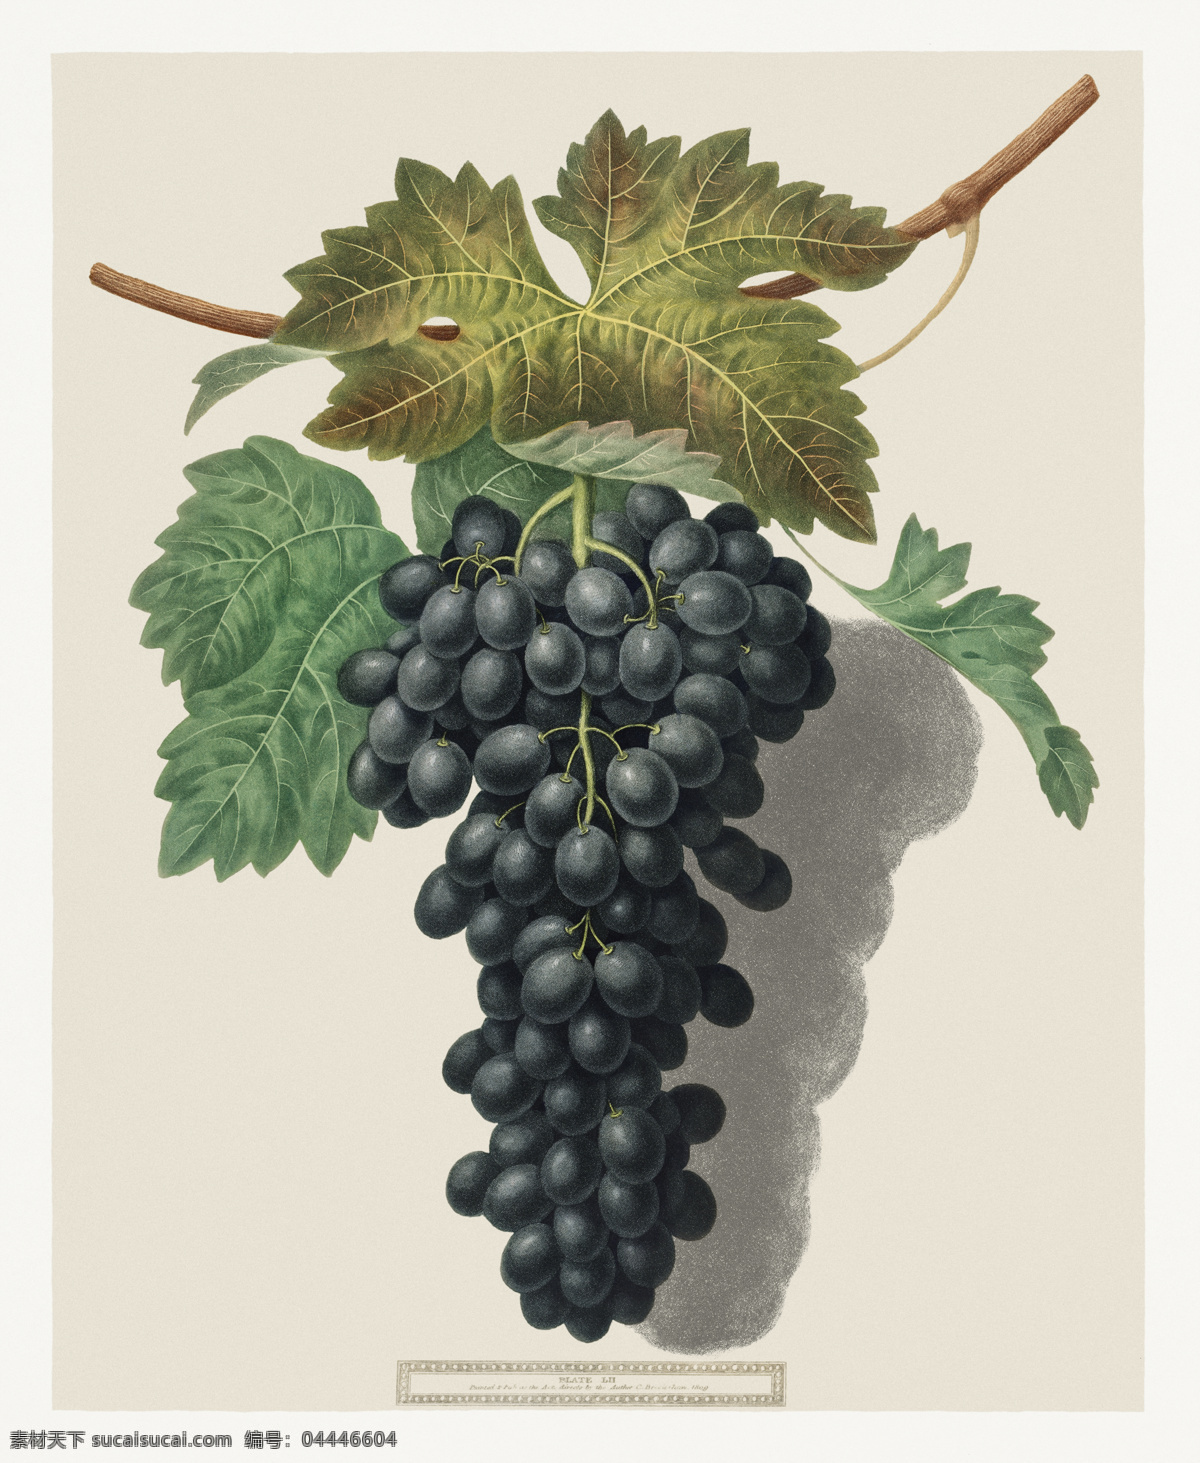 黑王子葡萄 黑葡萄 手绘葡萄 卡通葡萄 葡萄插图 葡萄插画 葡萄背景 食物 生物世界 水果